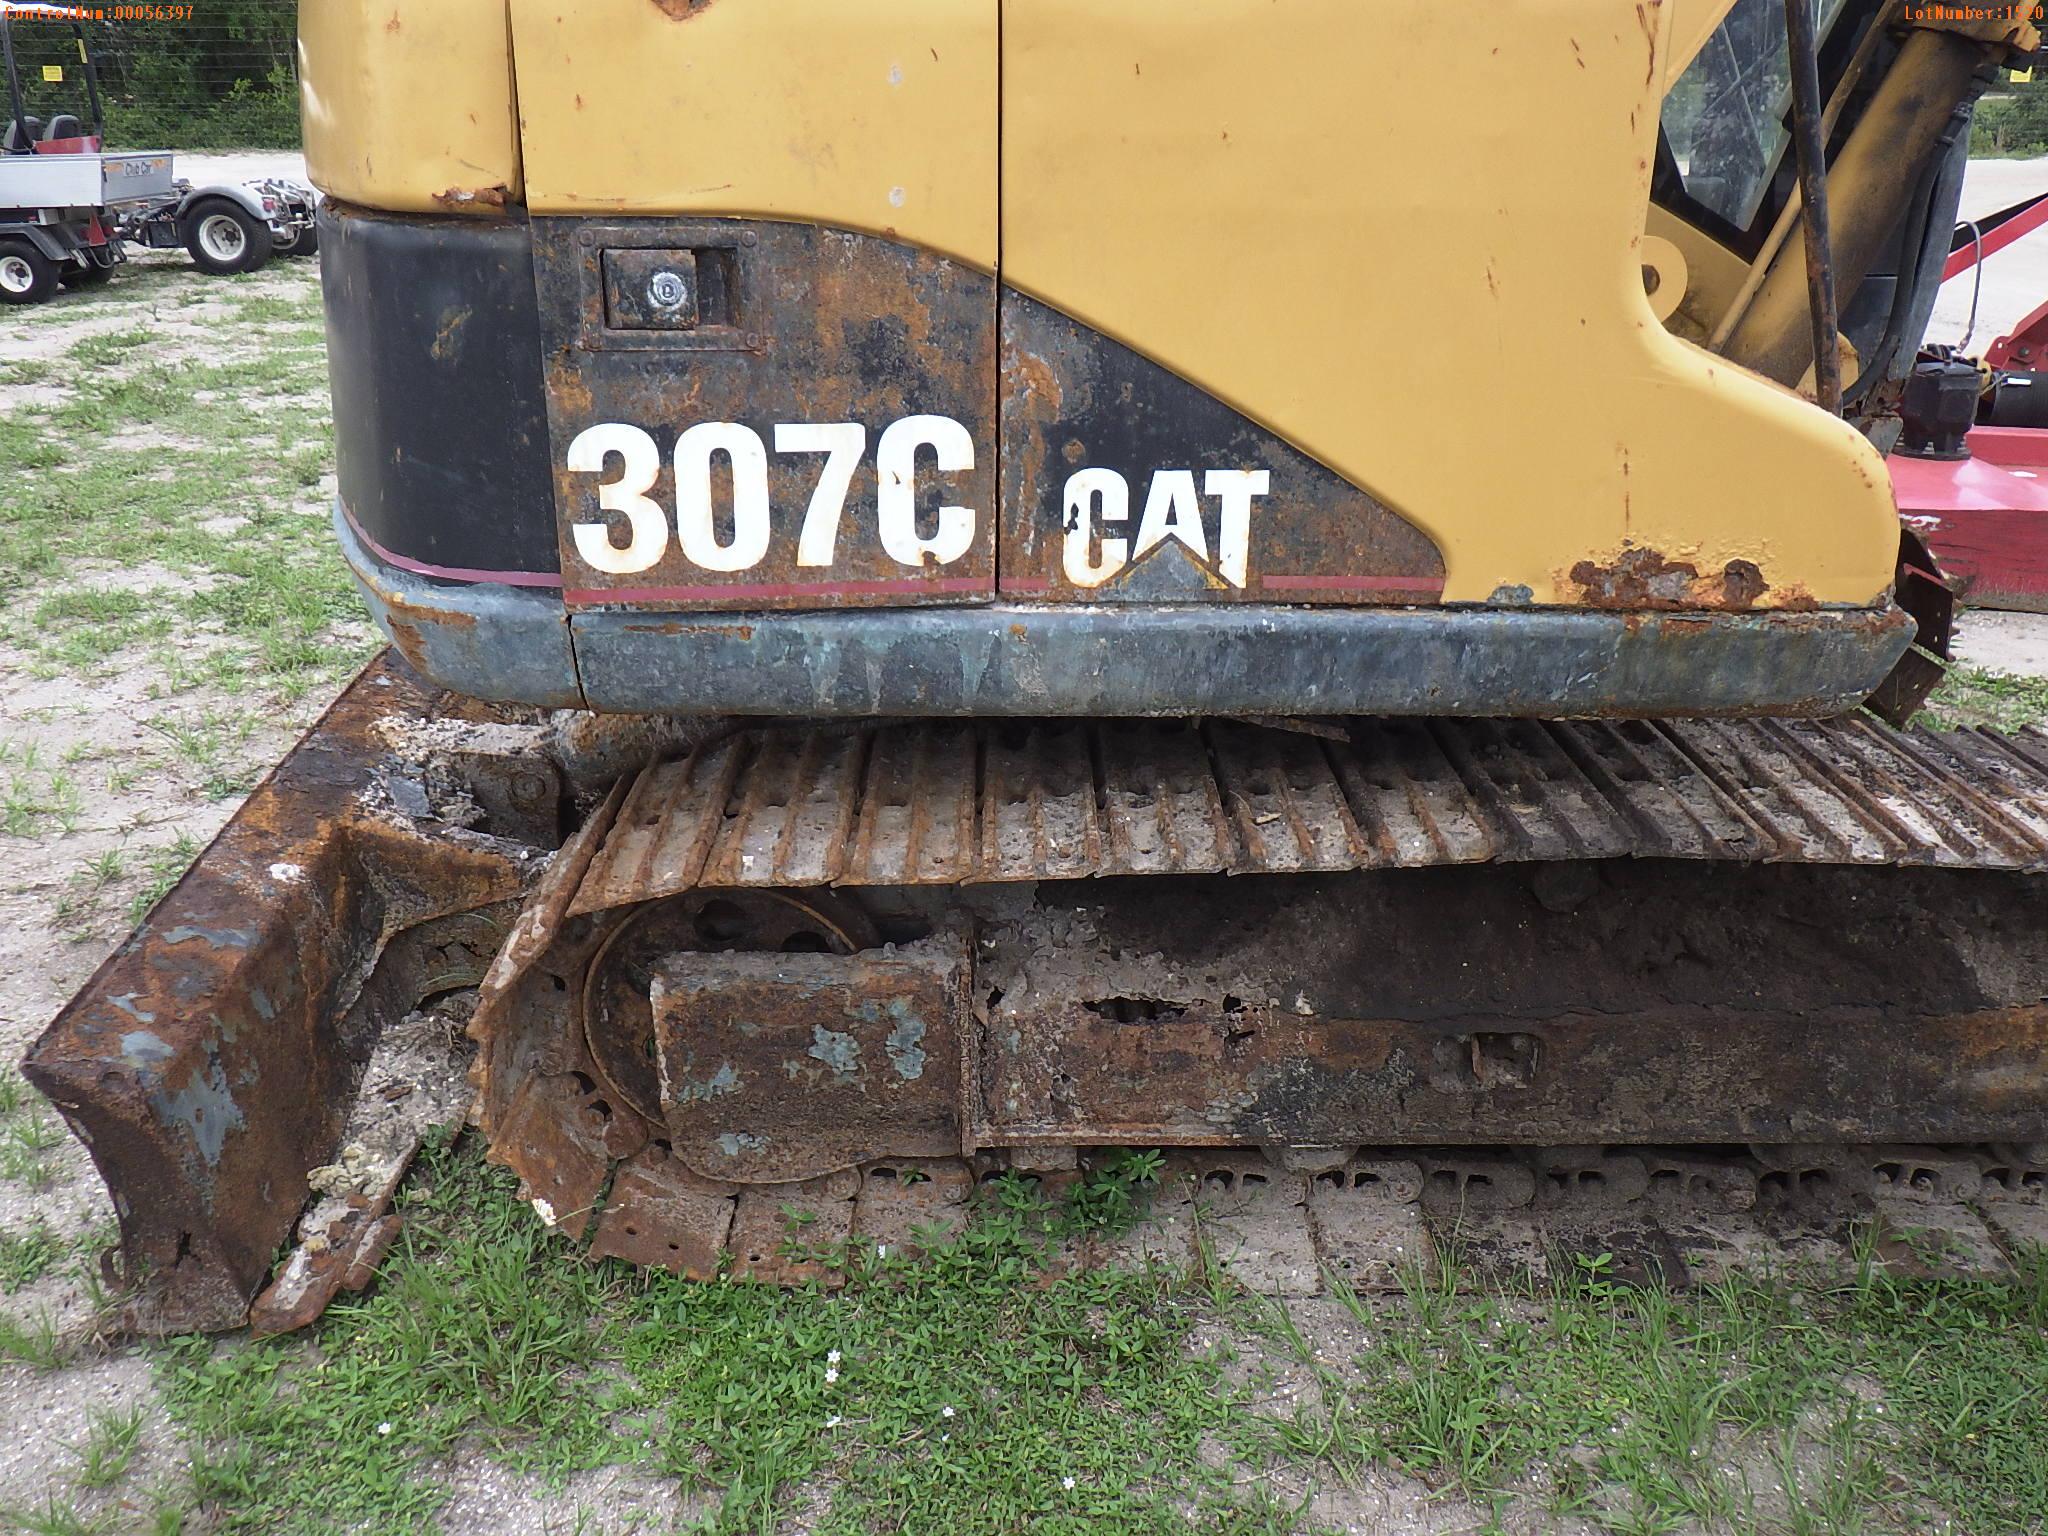 6-01520 (Equip.-Excavator)  Seller:Private/Dealer CAT 307C ENCLOSED CAB TRACK EX